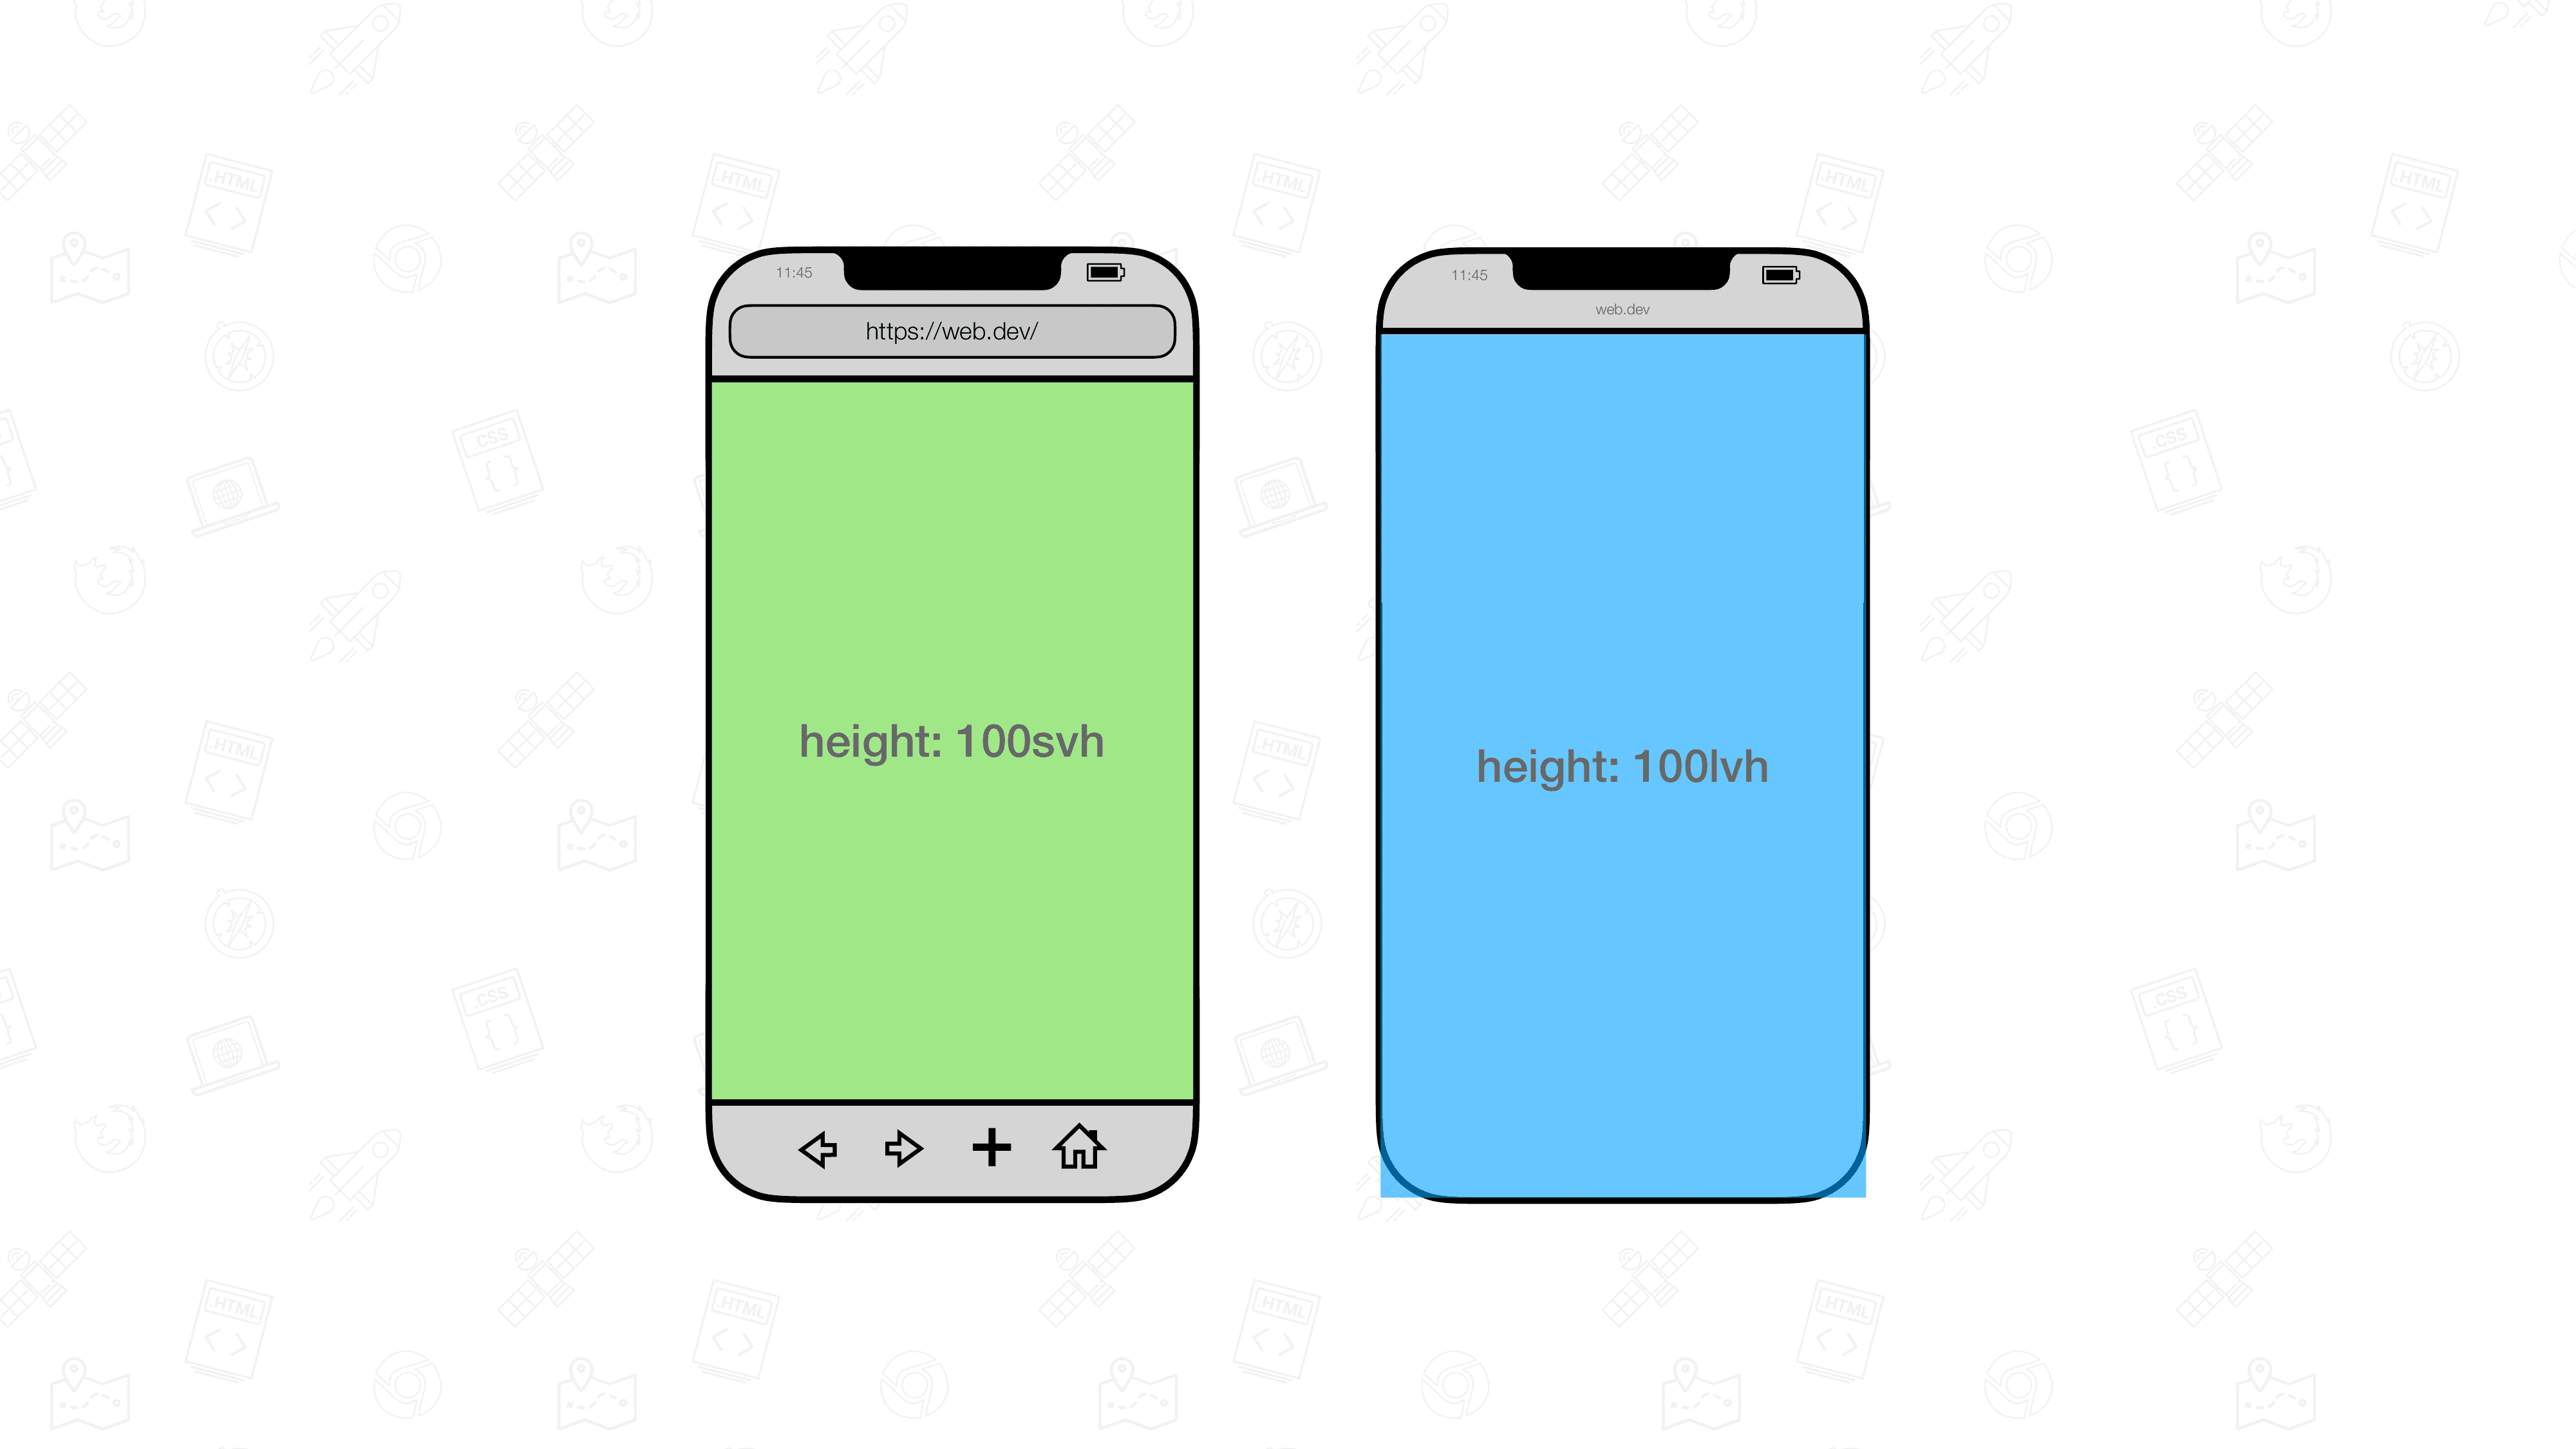 Yan yana konumlandırılmış iki mobil tarayıcı görselleştirmesi. Bir öğenin boyutu 100 svh, diğerinin boyutu 100 lvh olur.